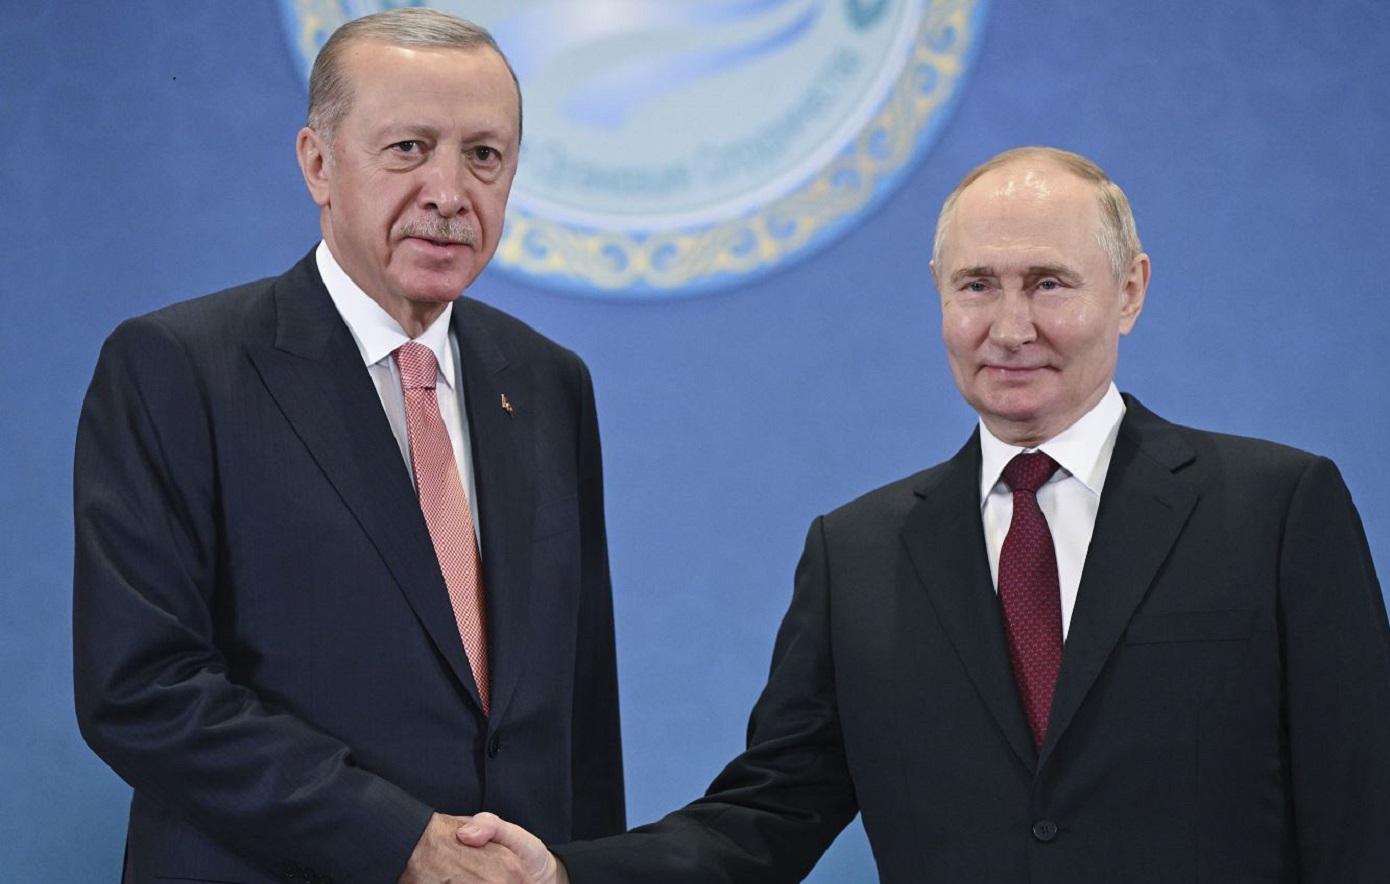 Πρόταση Ερντογάν στον Πούτιν να μεσολαβήσει η Τουρκία για επίτευξη ειρήνης στην Ουκρανία